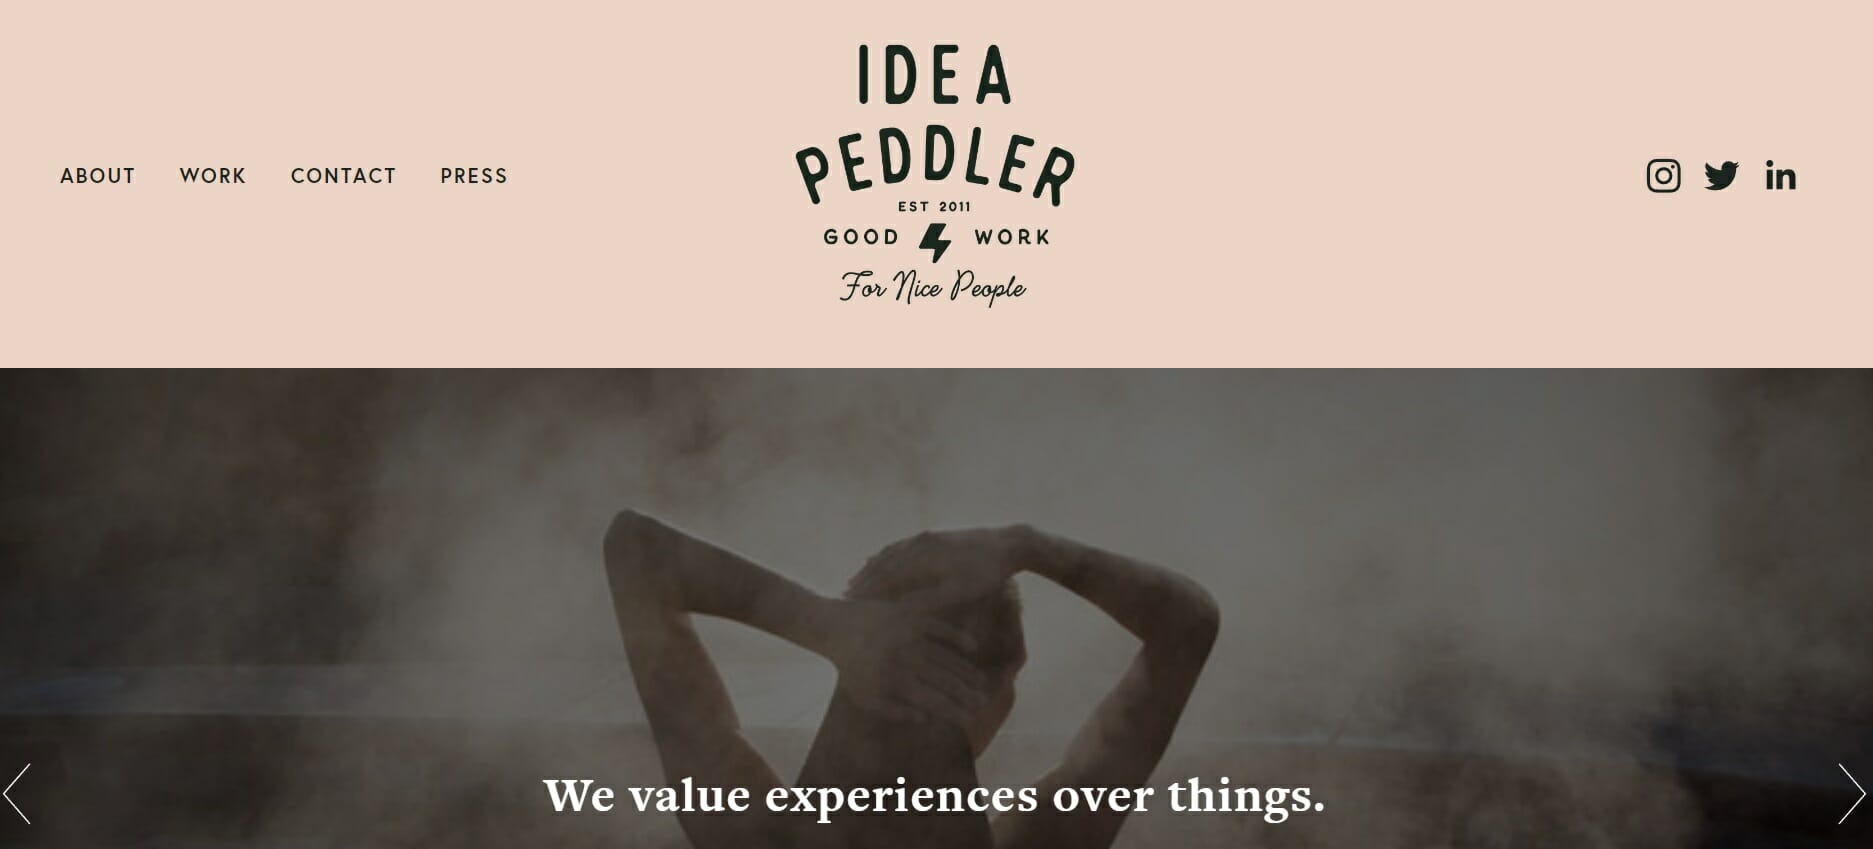 Idea Peddler